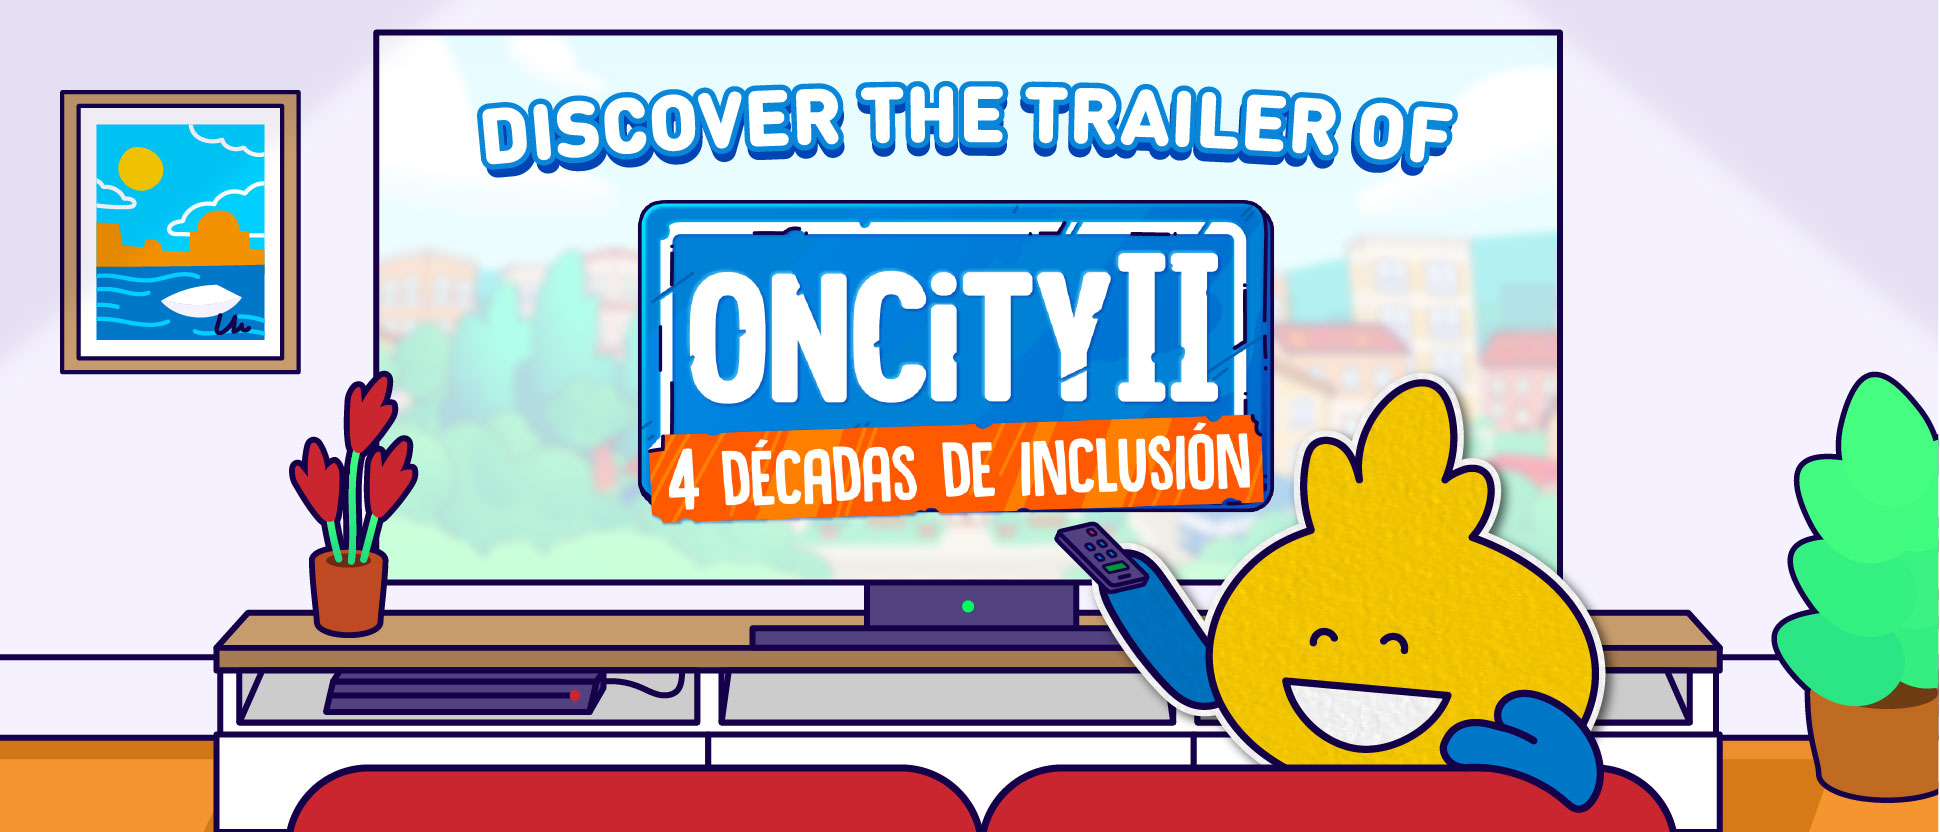 Enlace al trailer Oncity II - 4 décadas de inclusión